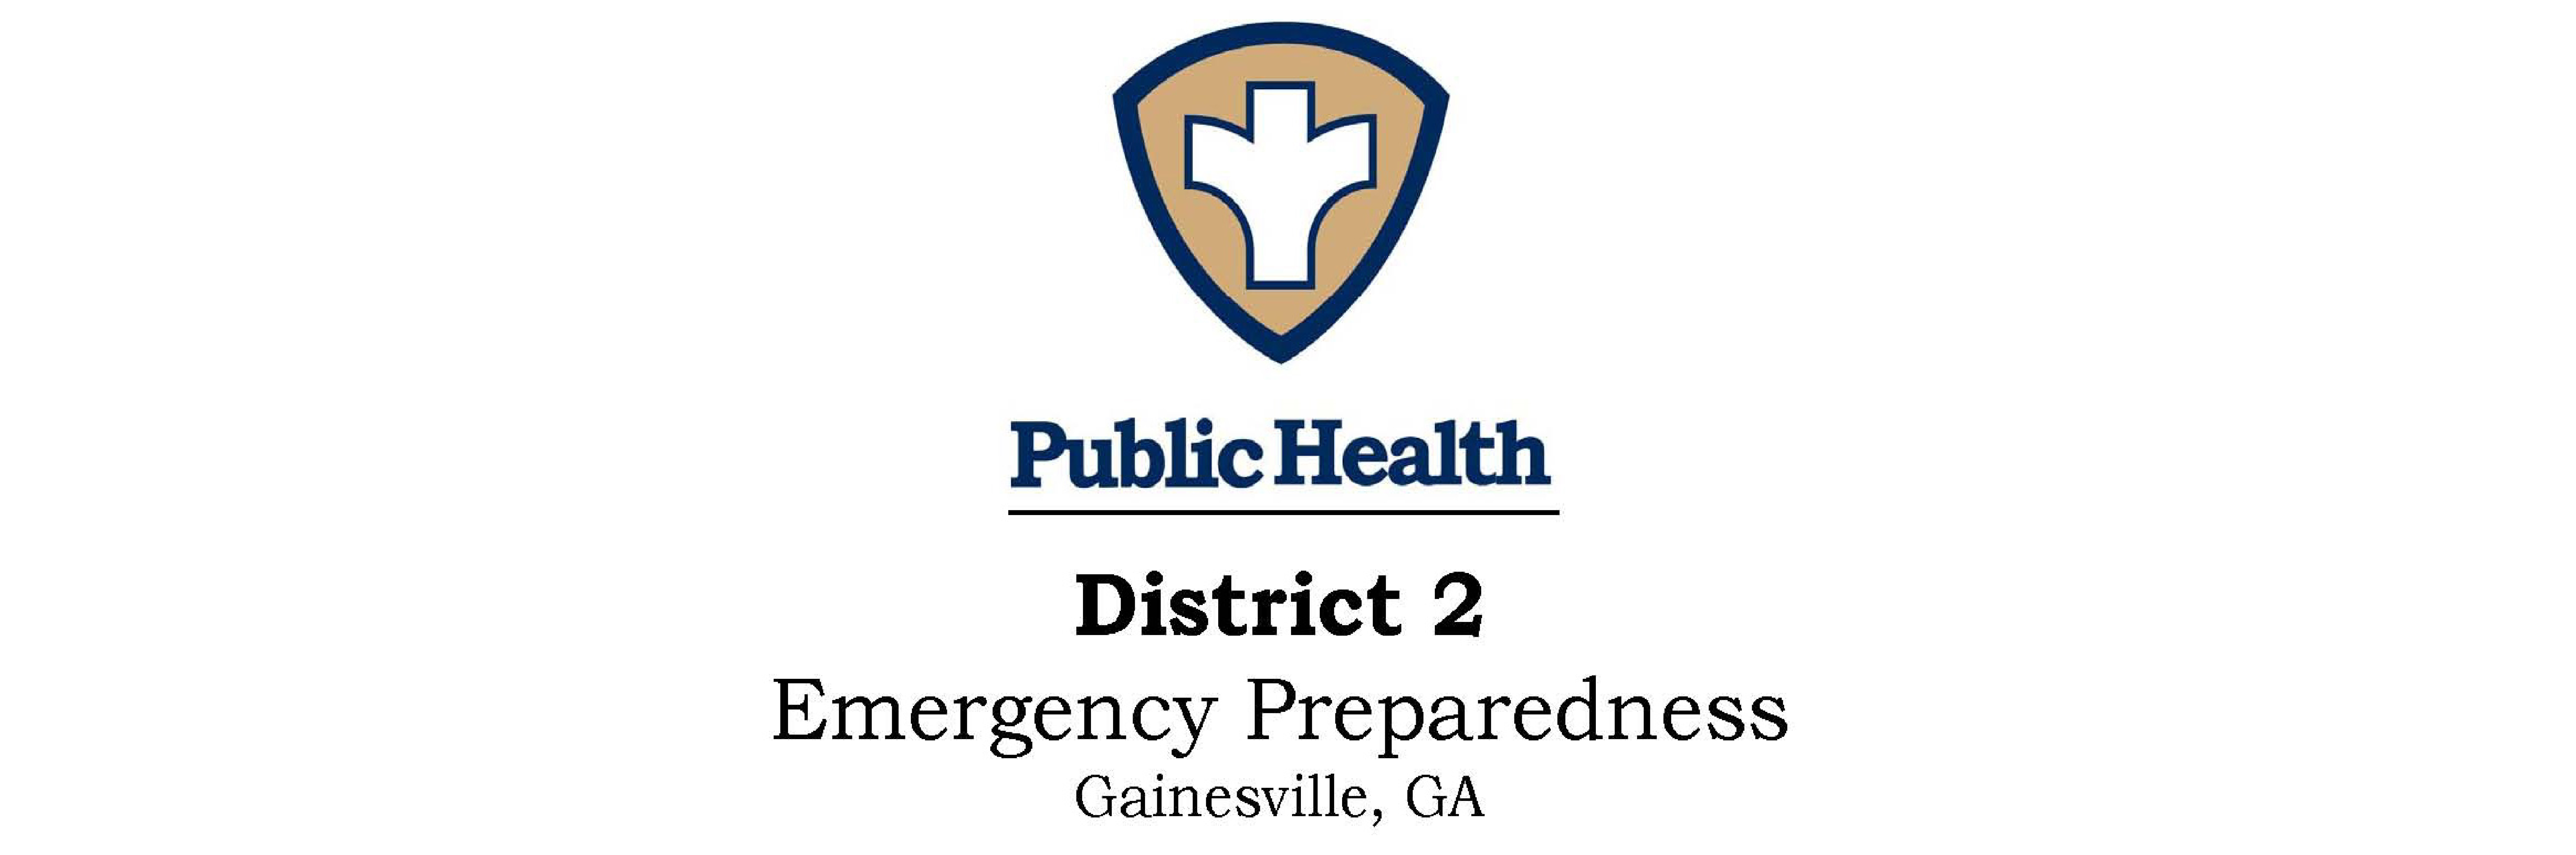 District 2 Public Health